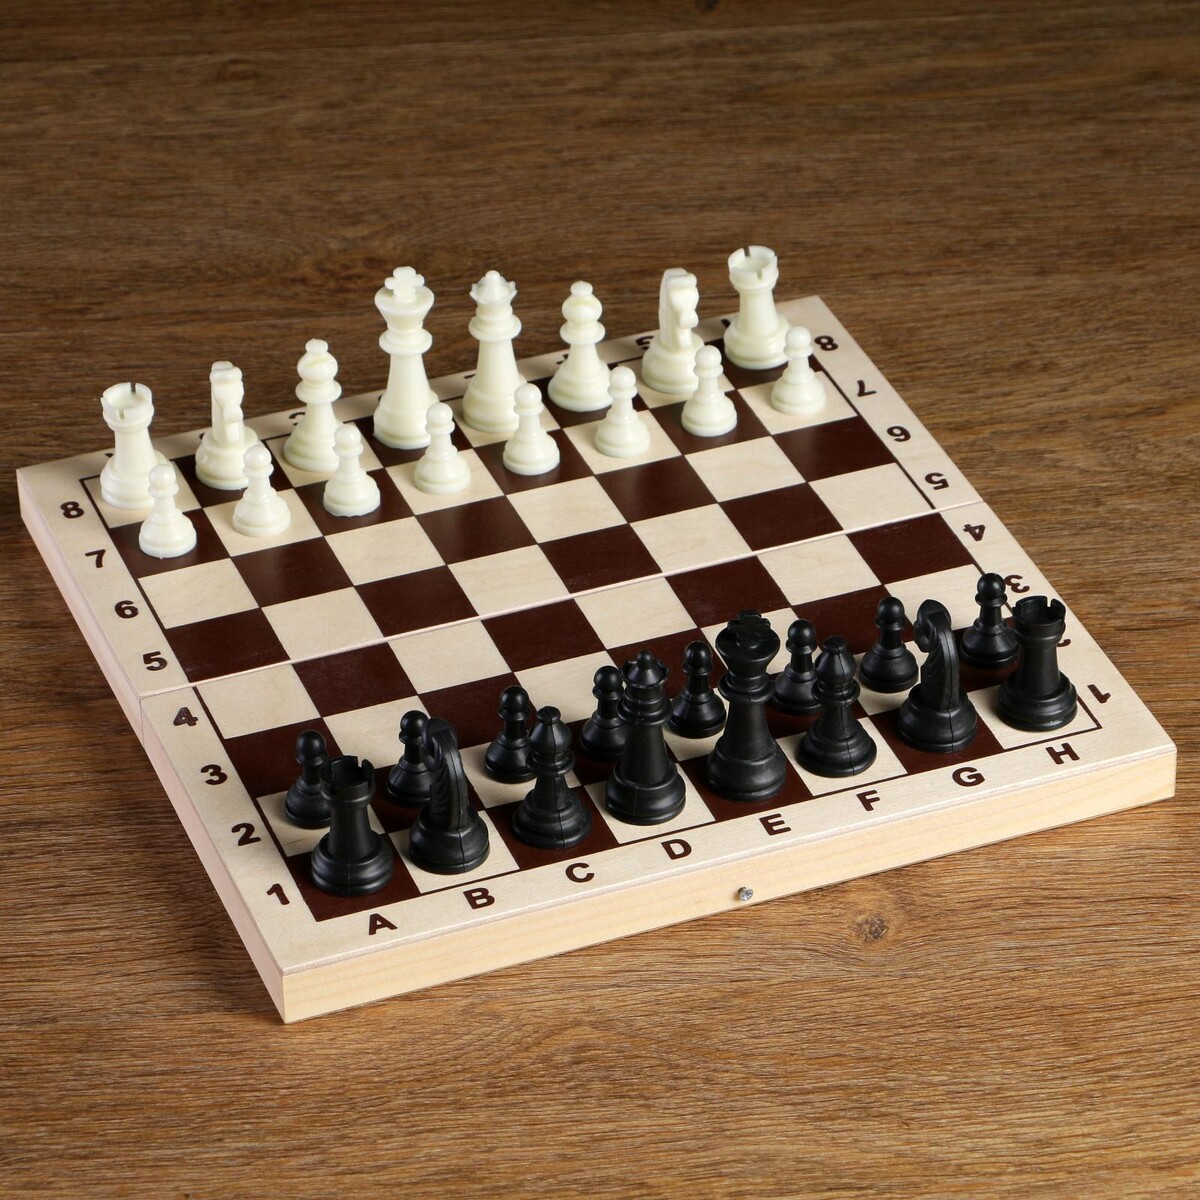 Шахматные фигуры, пластик, король h-6.2 см, пешка h-3 см титановый король